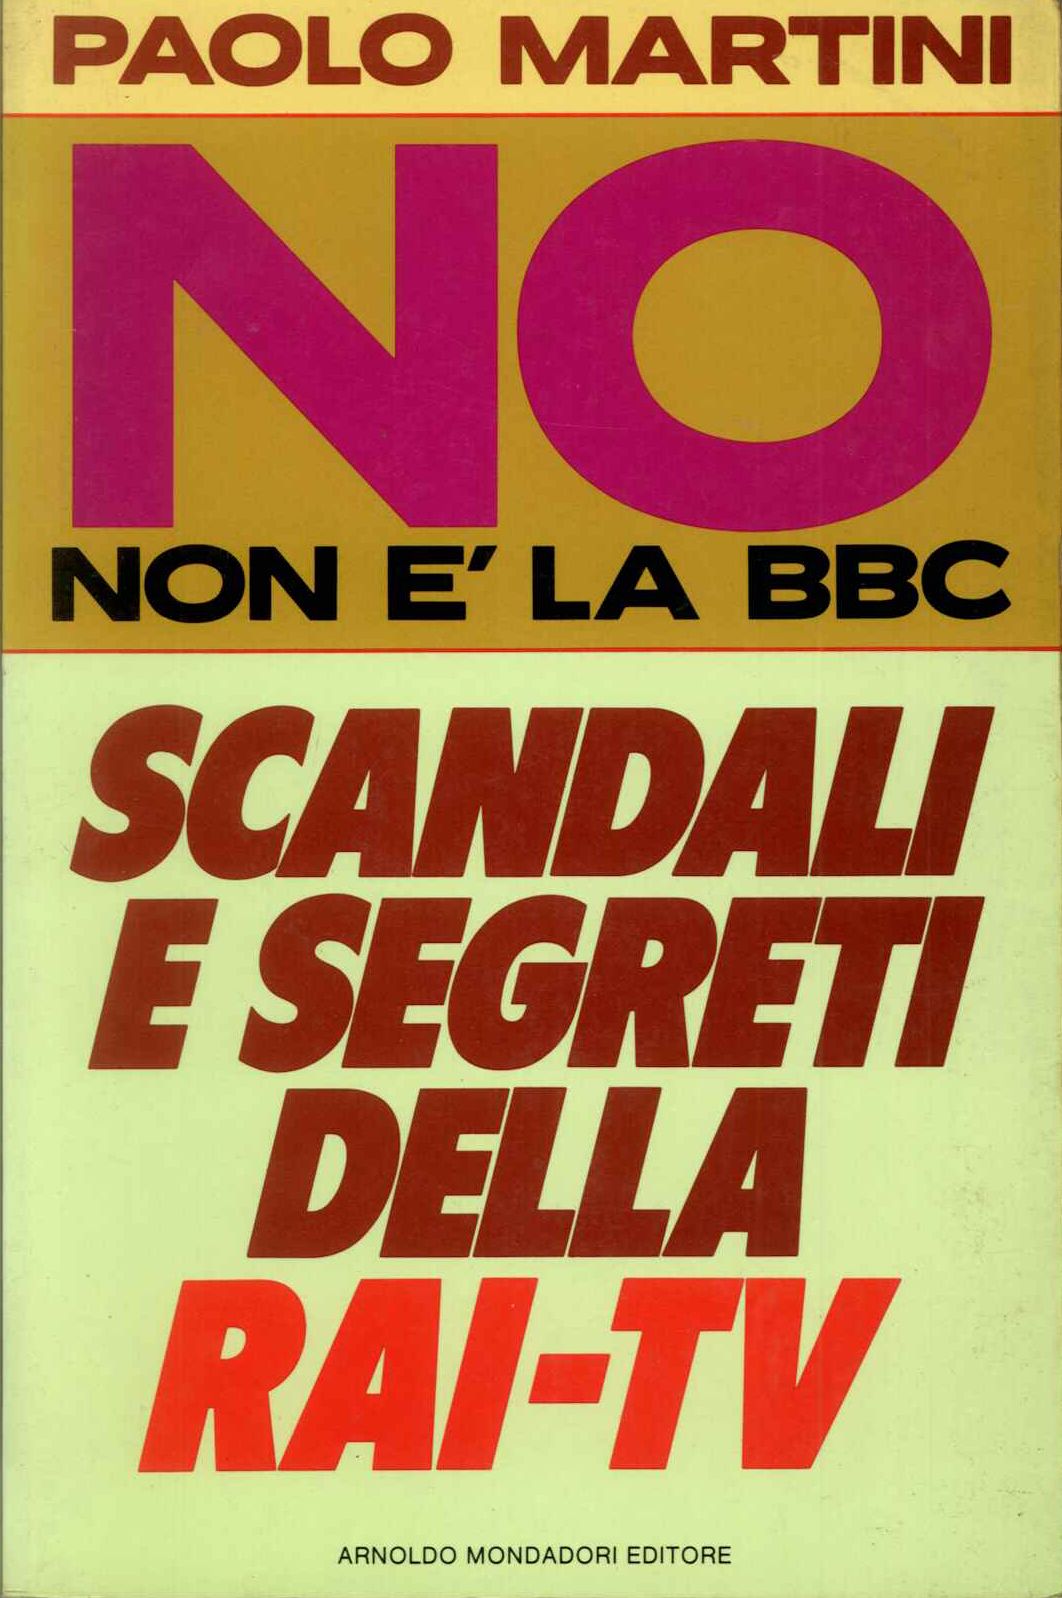 No non è la BBC. Scandali e segreti della RAI-TV